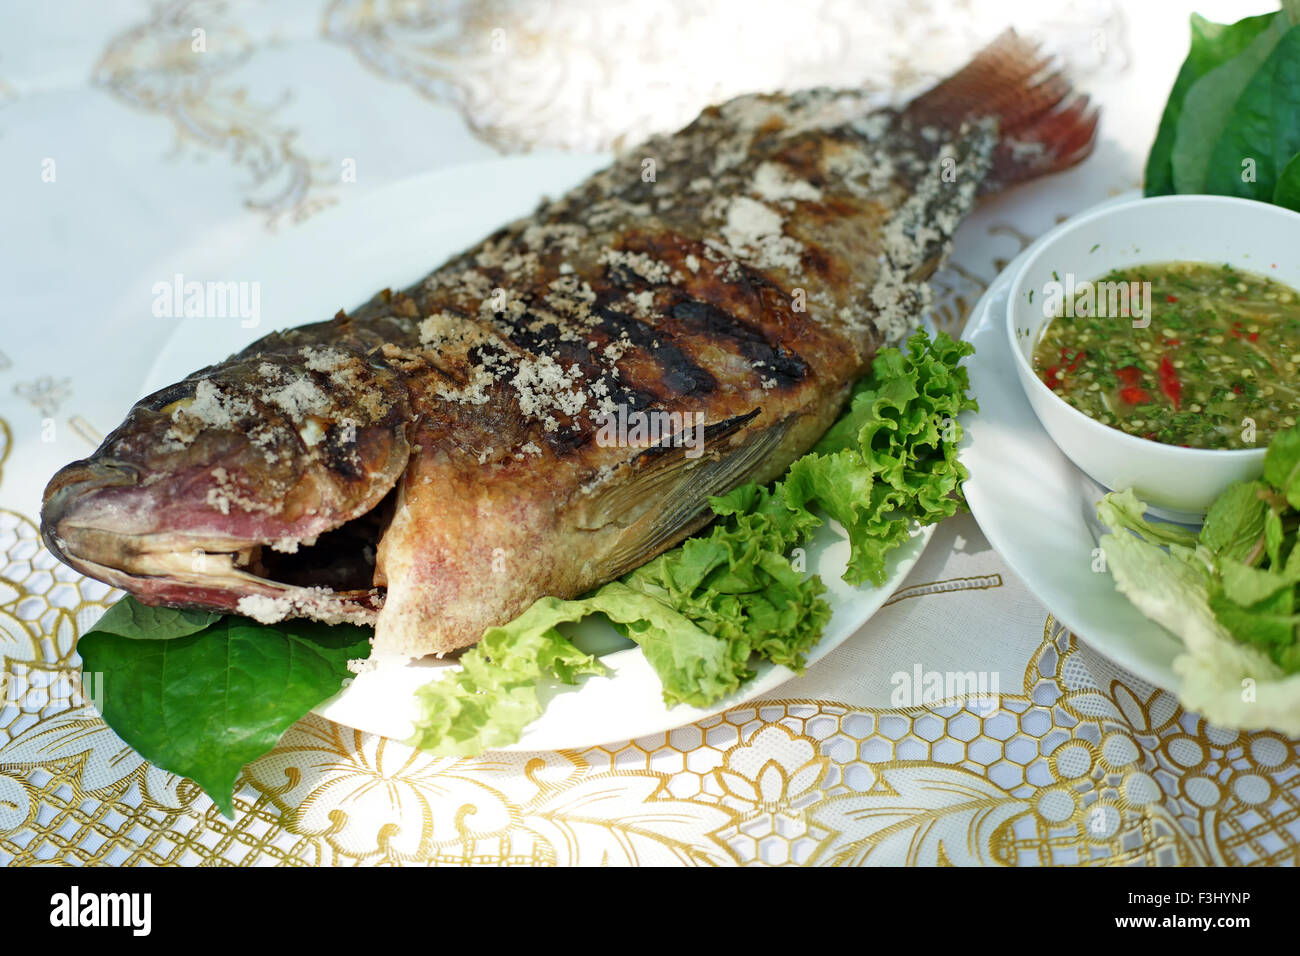 Cibo tailandese, sale di pesce alla griglia con contorni Foto Stock